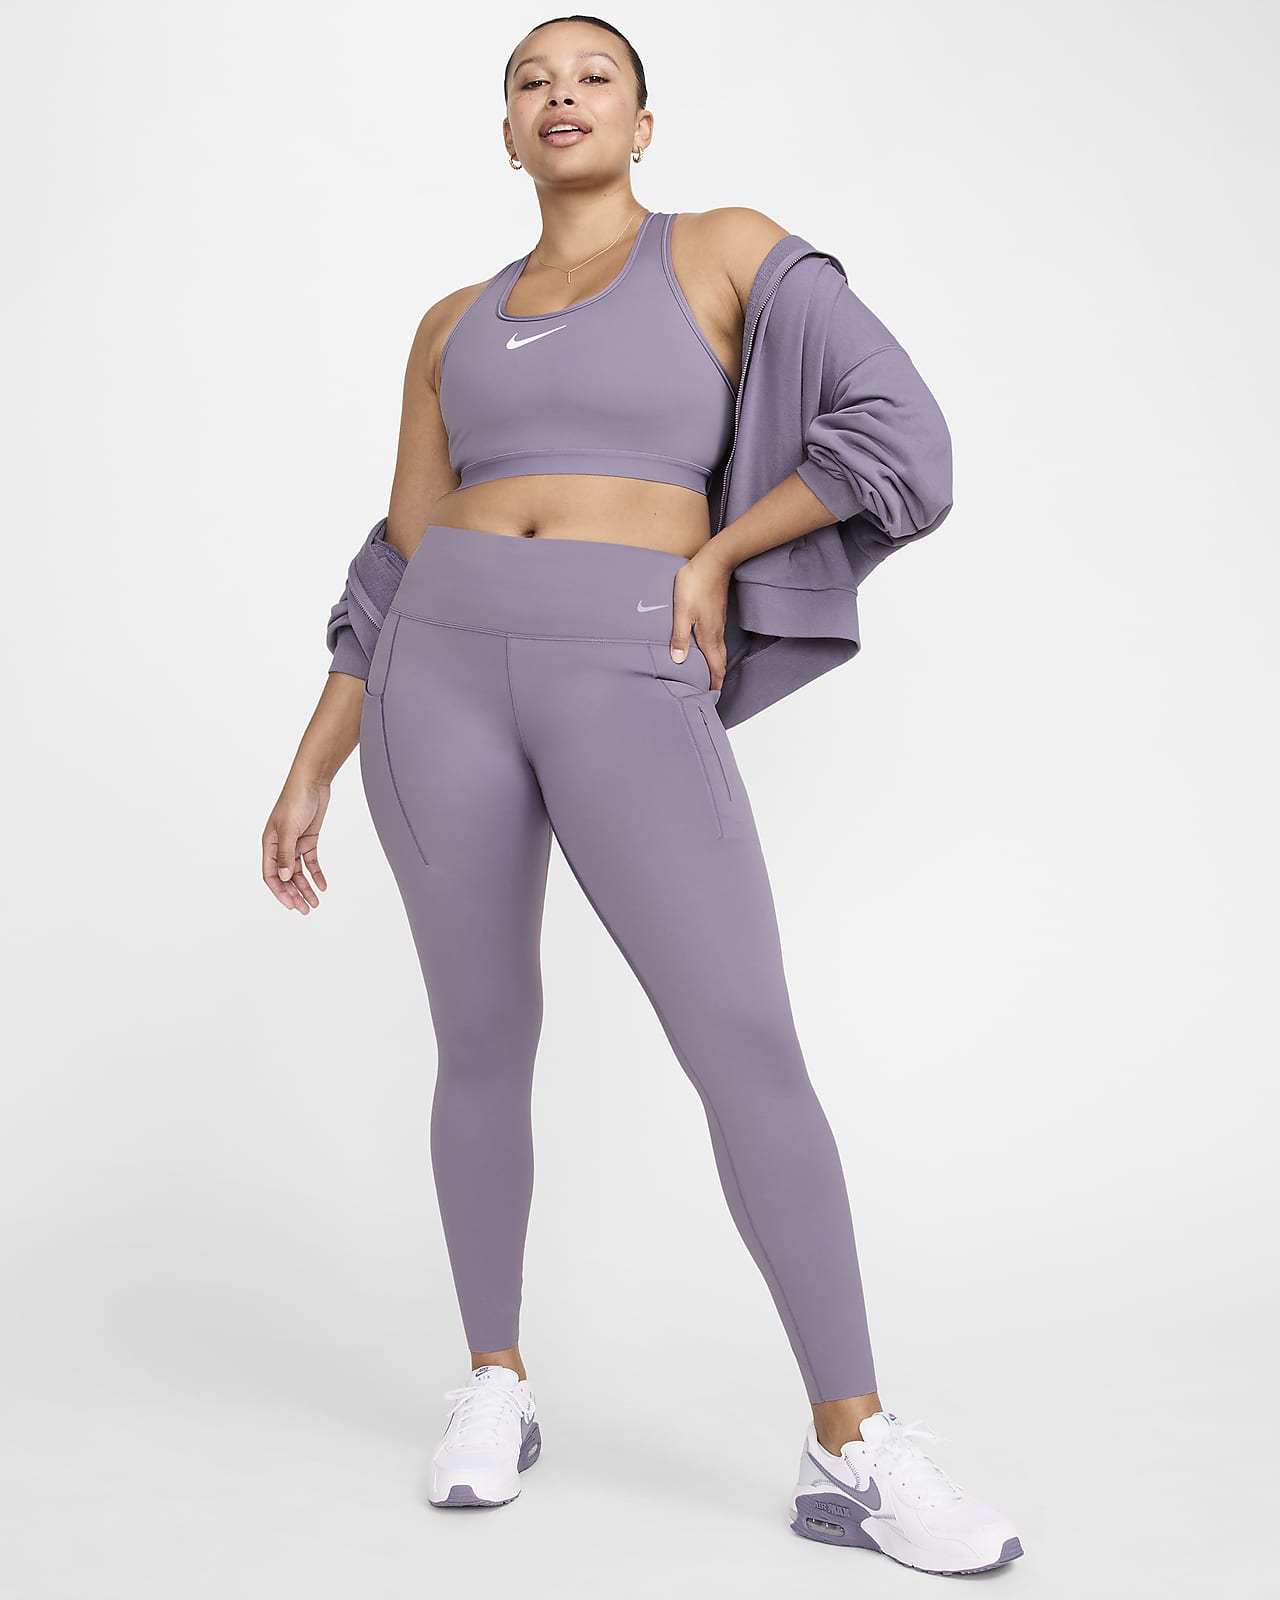 Γυναικείο κολάν μεσαίου ύψους σε κανονικό μήκος με σταθερή στήριξη και τσέπες Nike Go